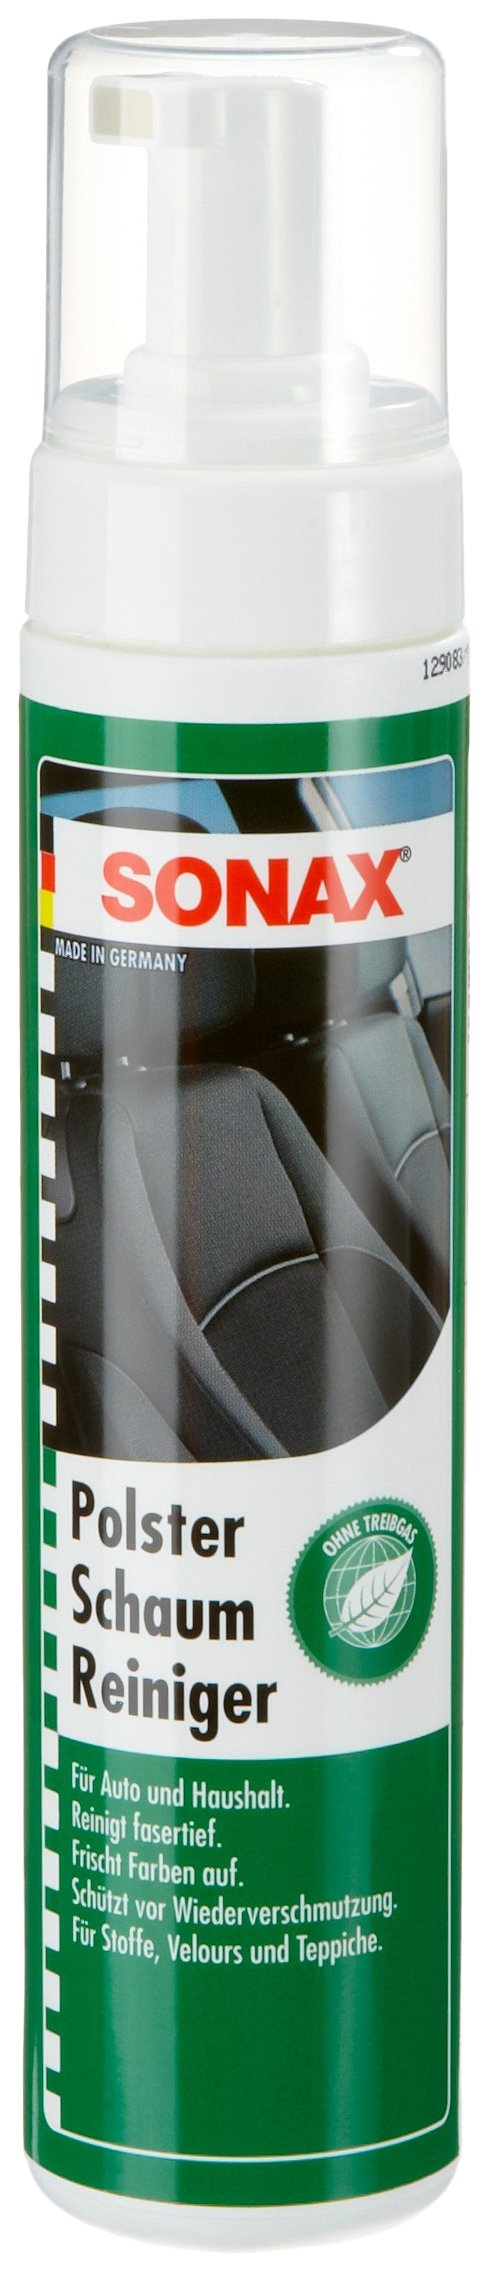 SONAX 306141 PolsterSchaumReiniger treibgasfrei, 250ml von SONAX